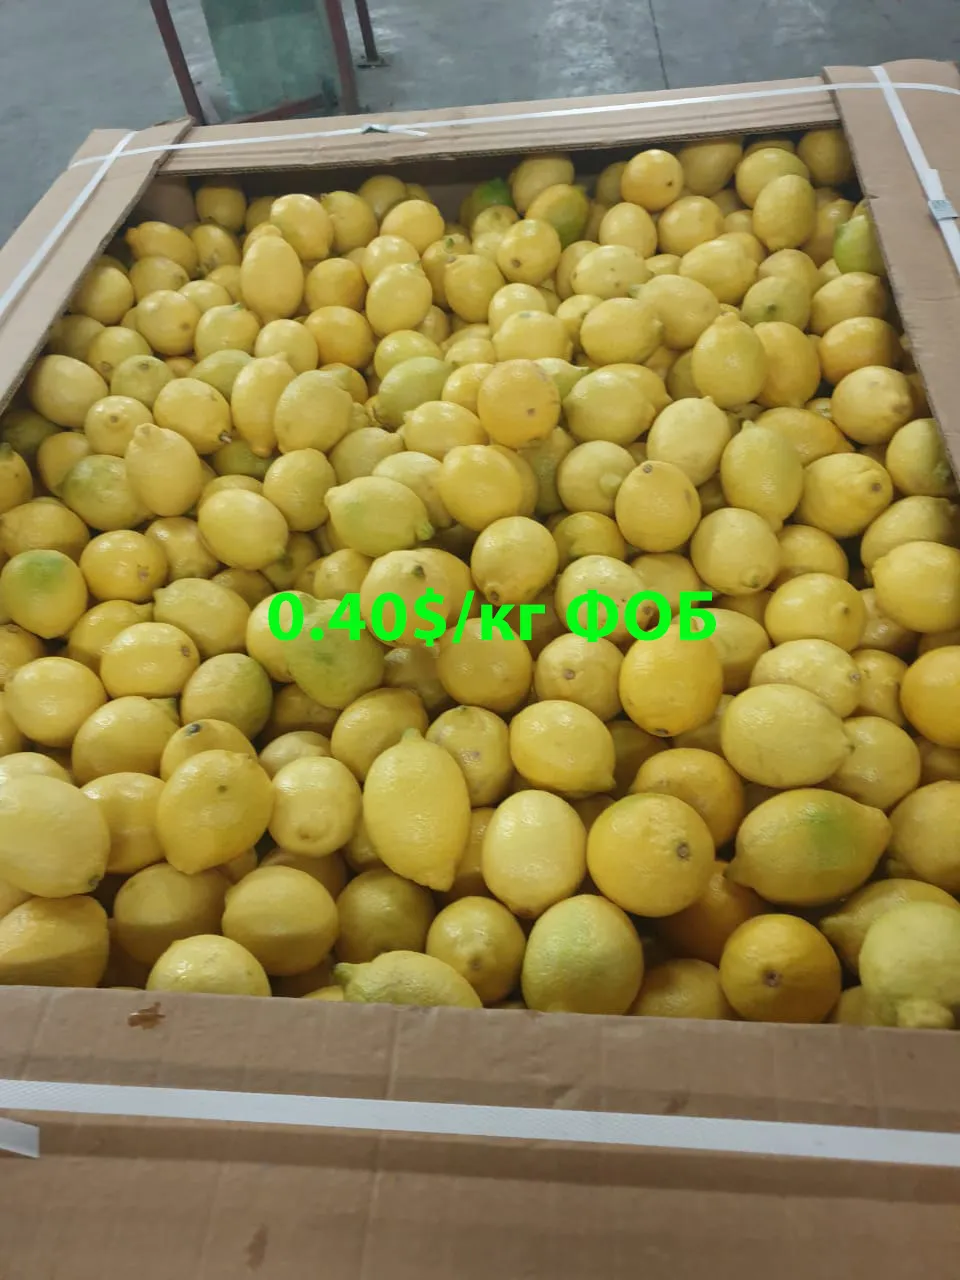 фотография продукта Лимоны от 0.40$/кг / Египет